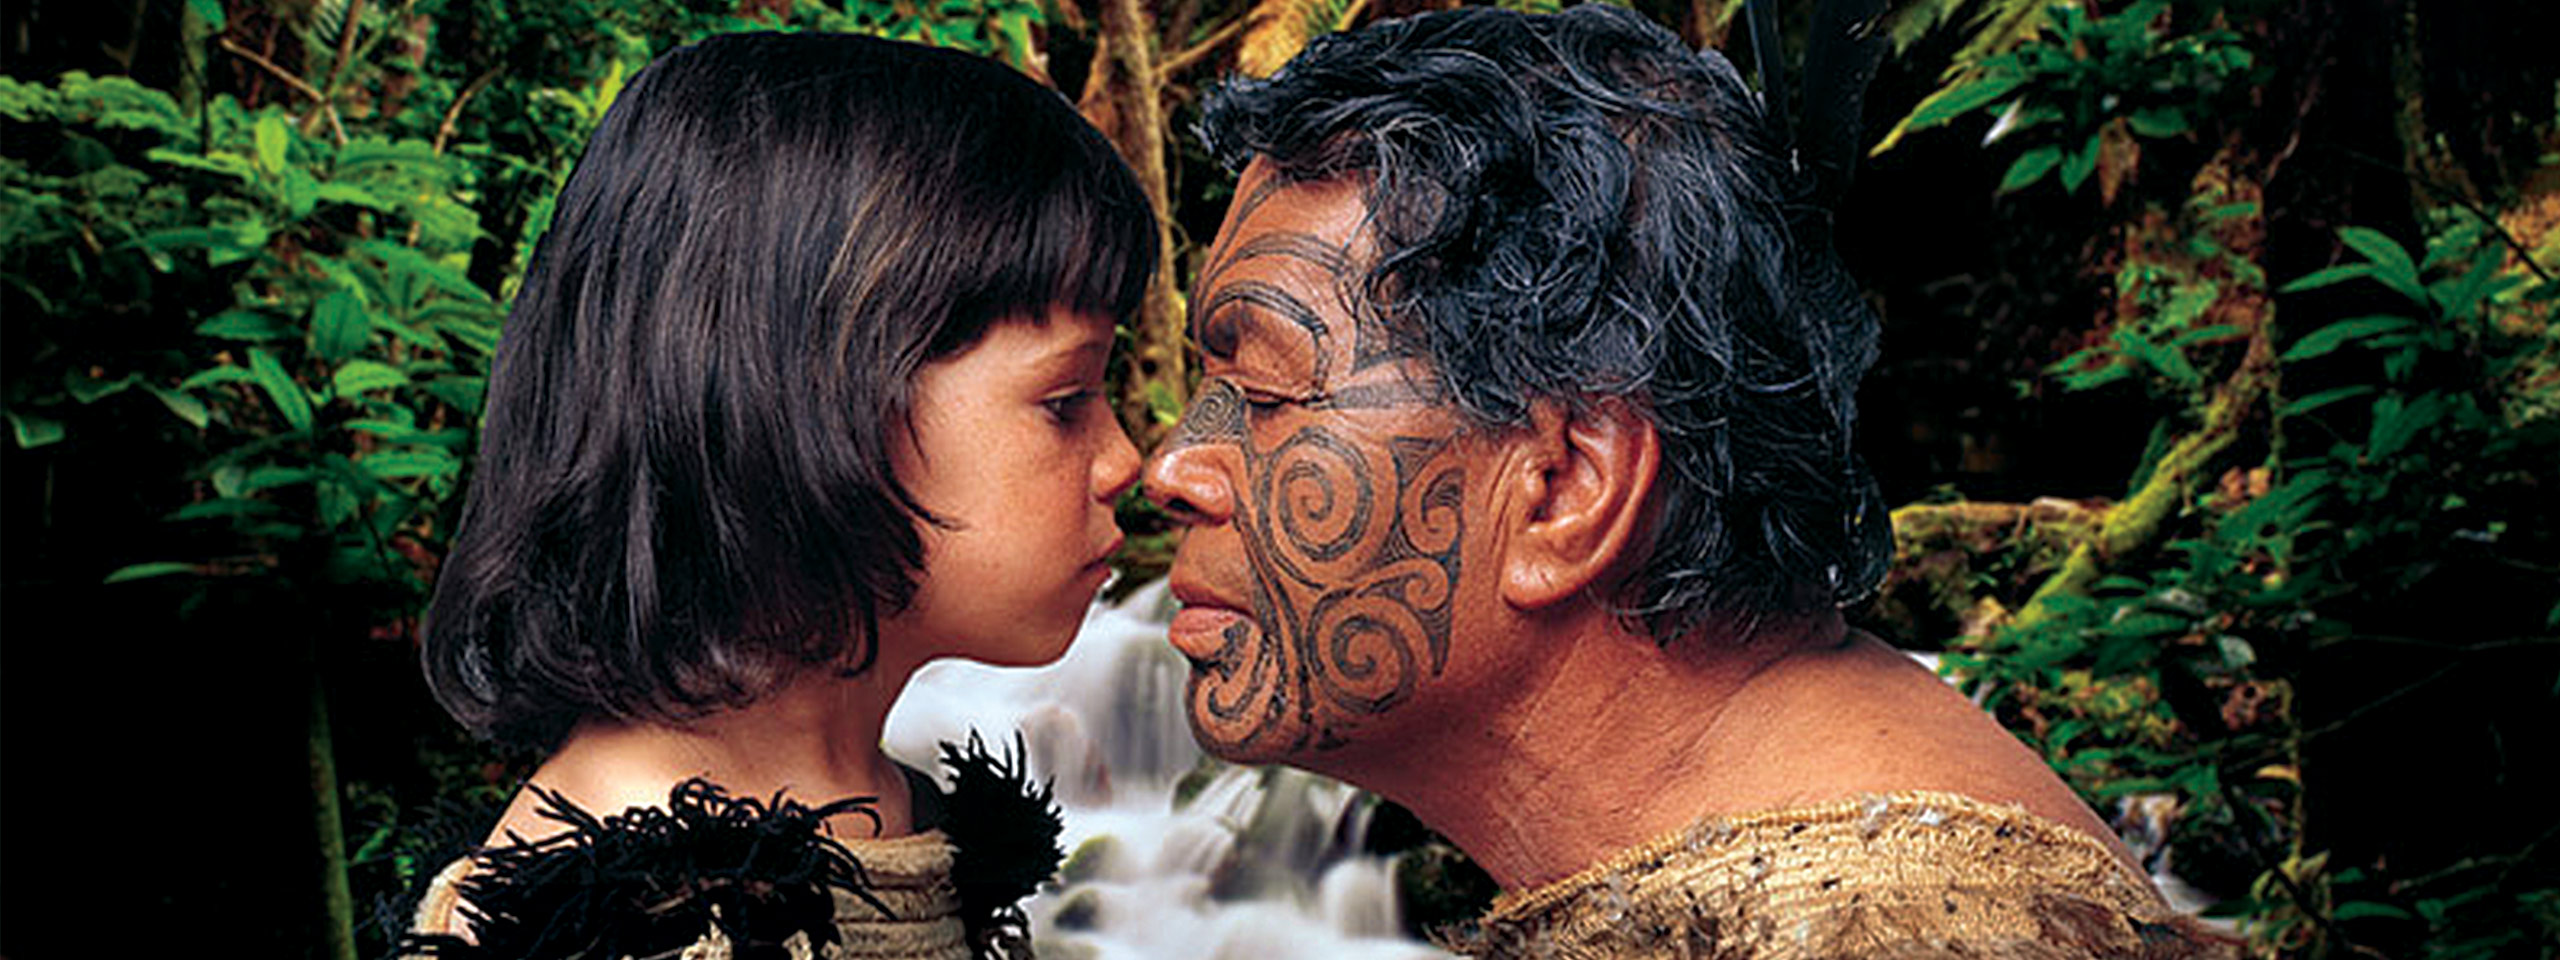 Maori Greeting